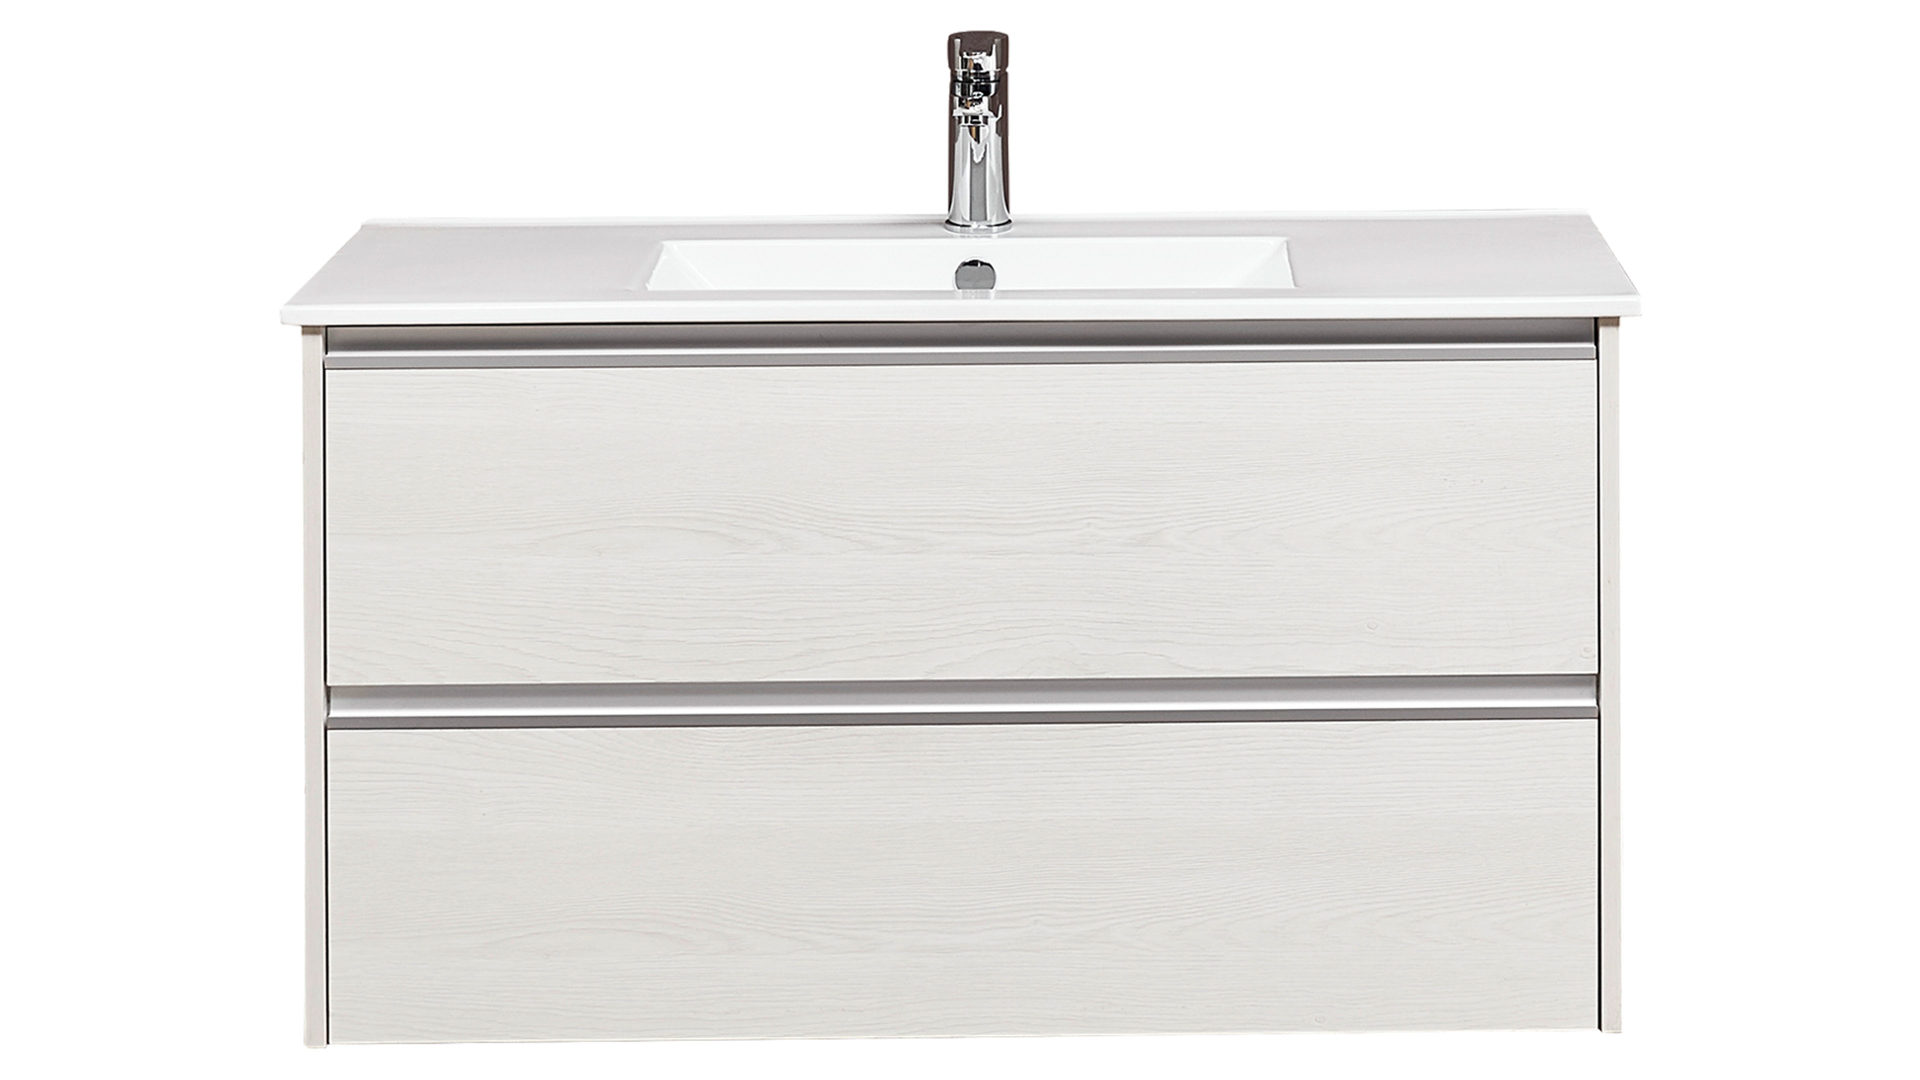 Waschbeckenunterschrank Pelipal aus Holz in Weiß pelipal Waschtischunterschrank Serie 6040 weiße eichefarbene Kunststoffoberflächen – zwei Auszüge